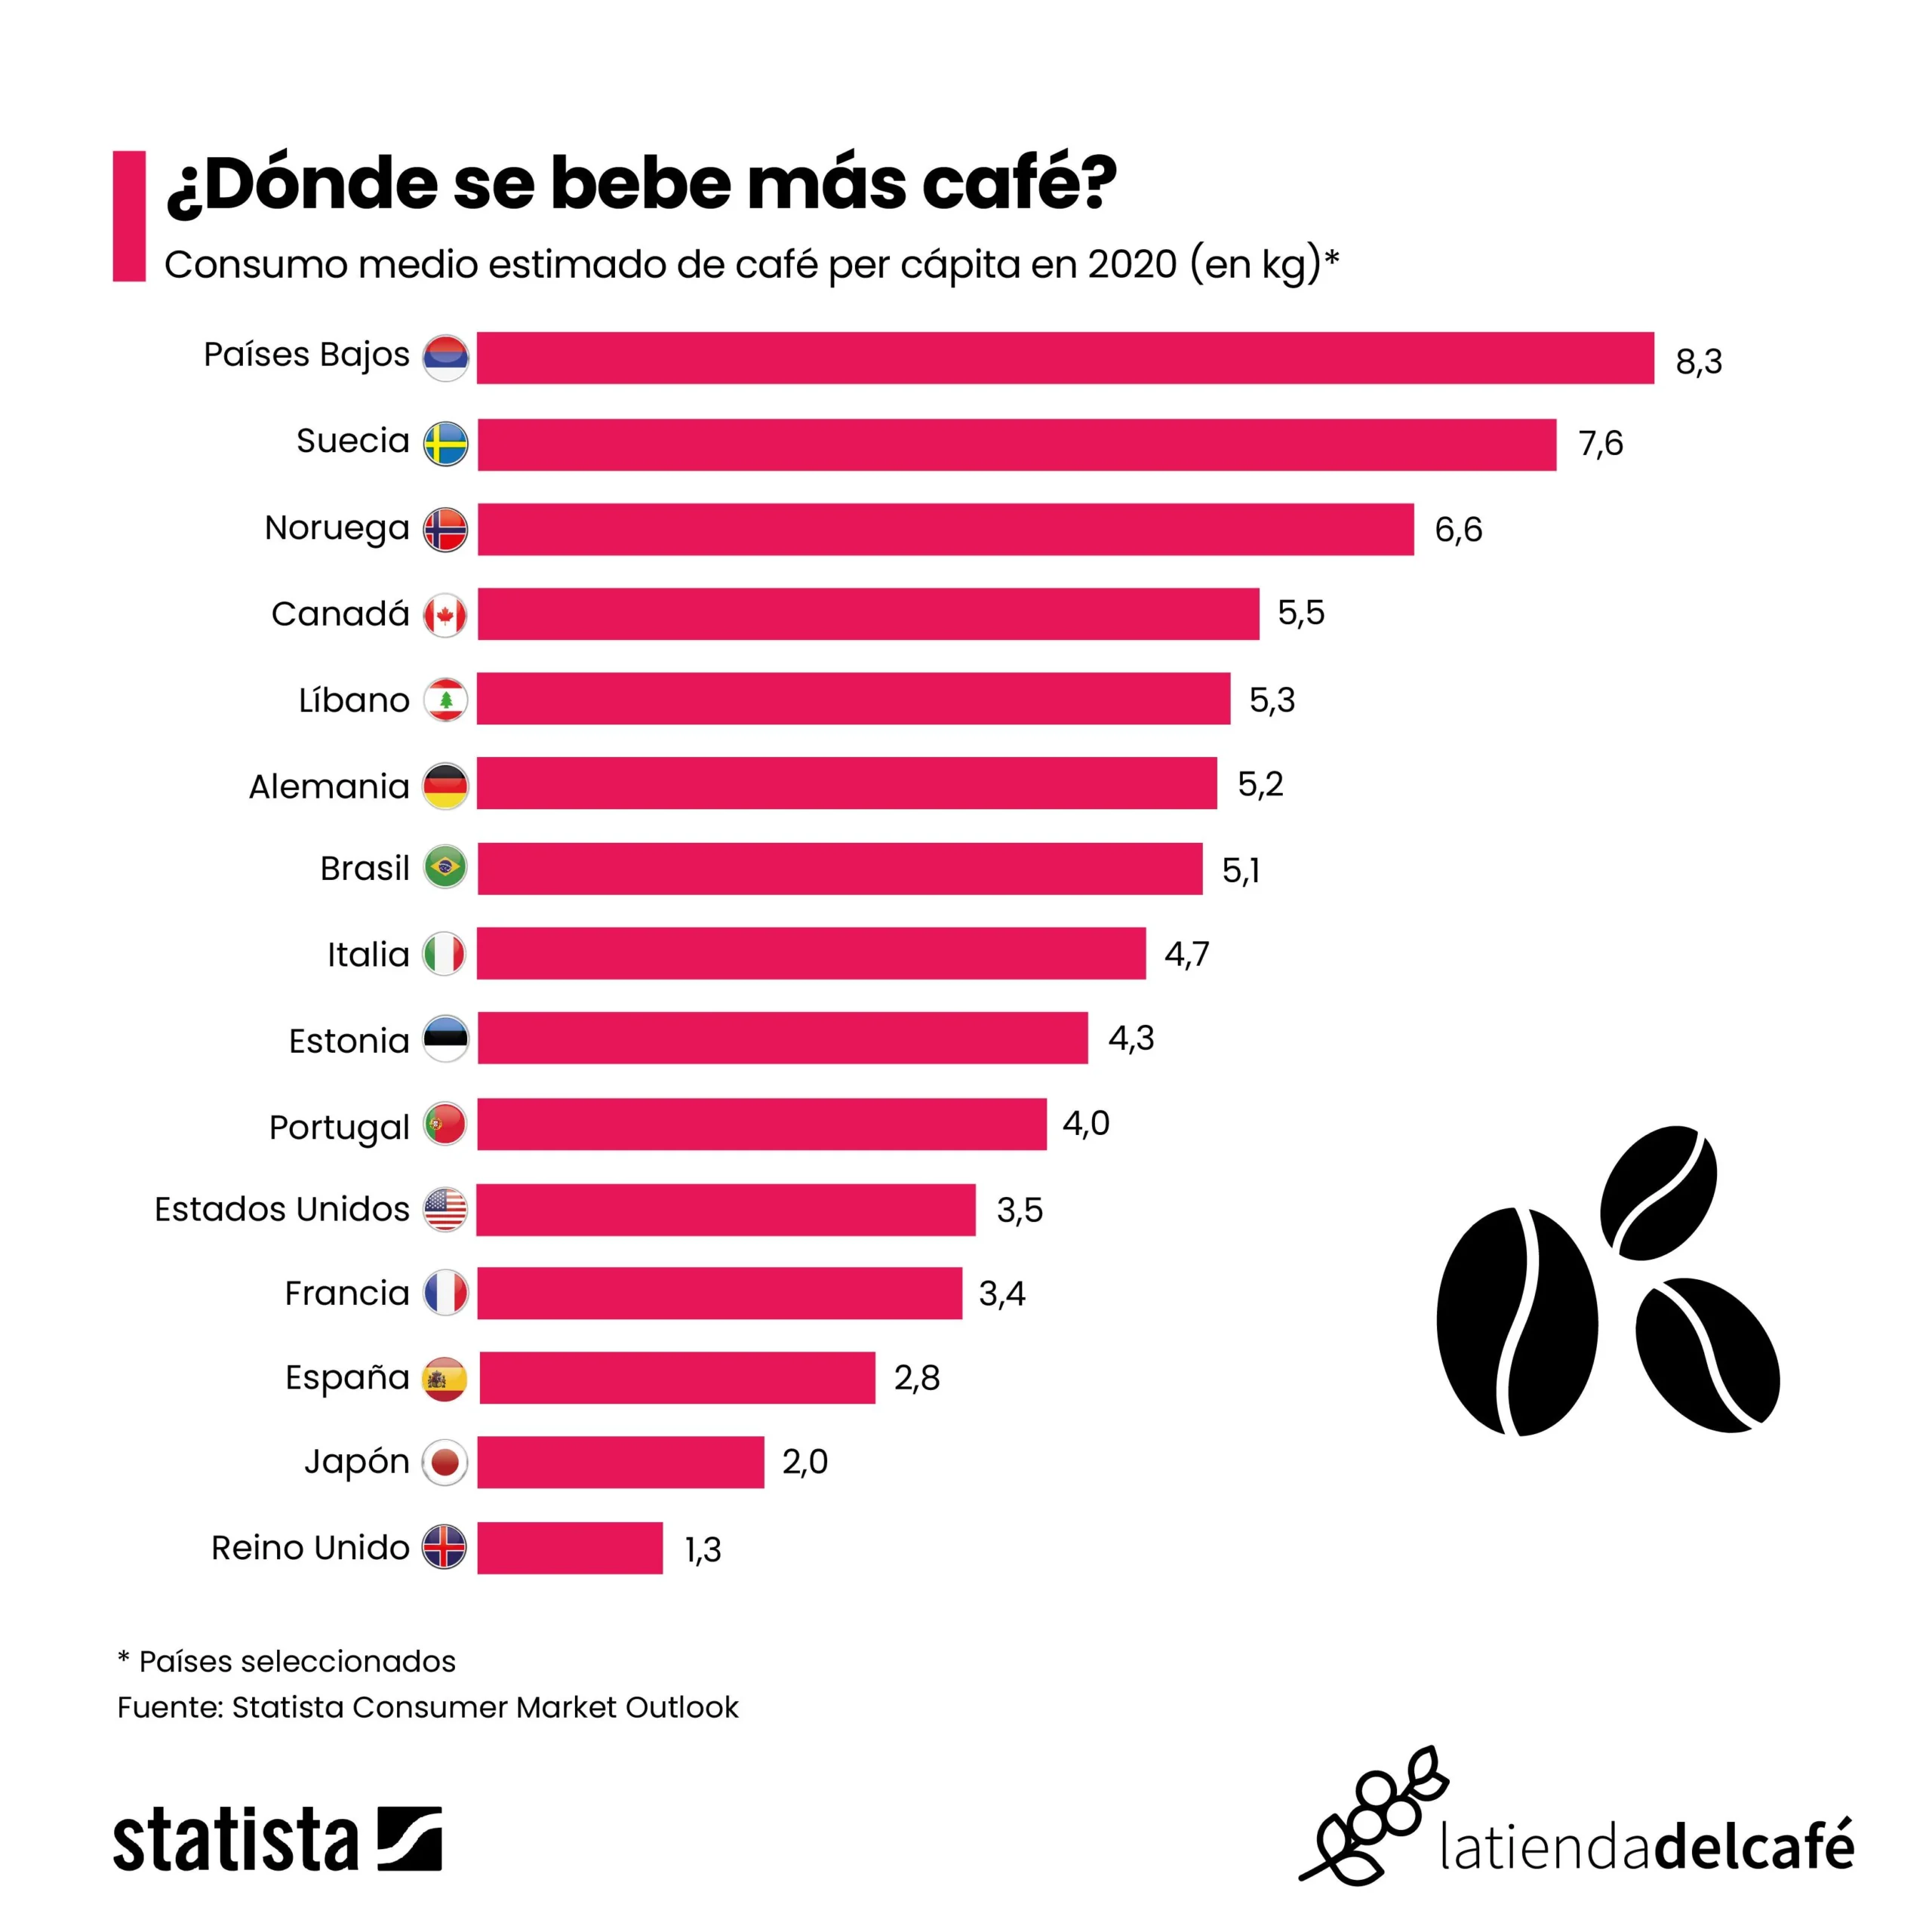 cual es el pais que consume mas cafe - Qué país consume más café en Latinoamerica